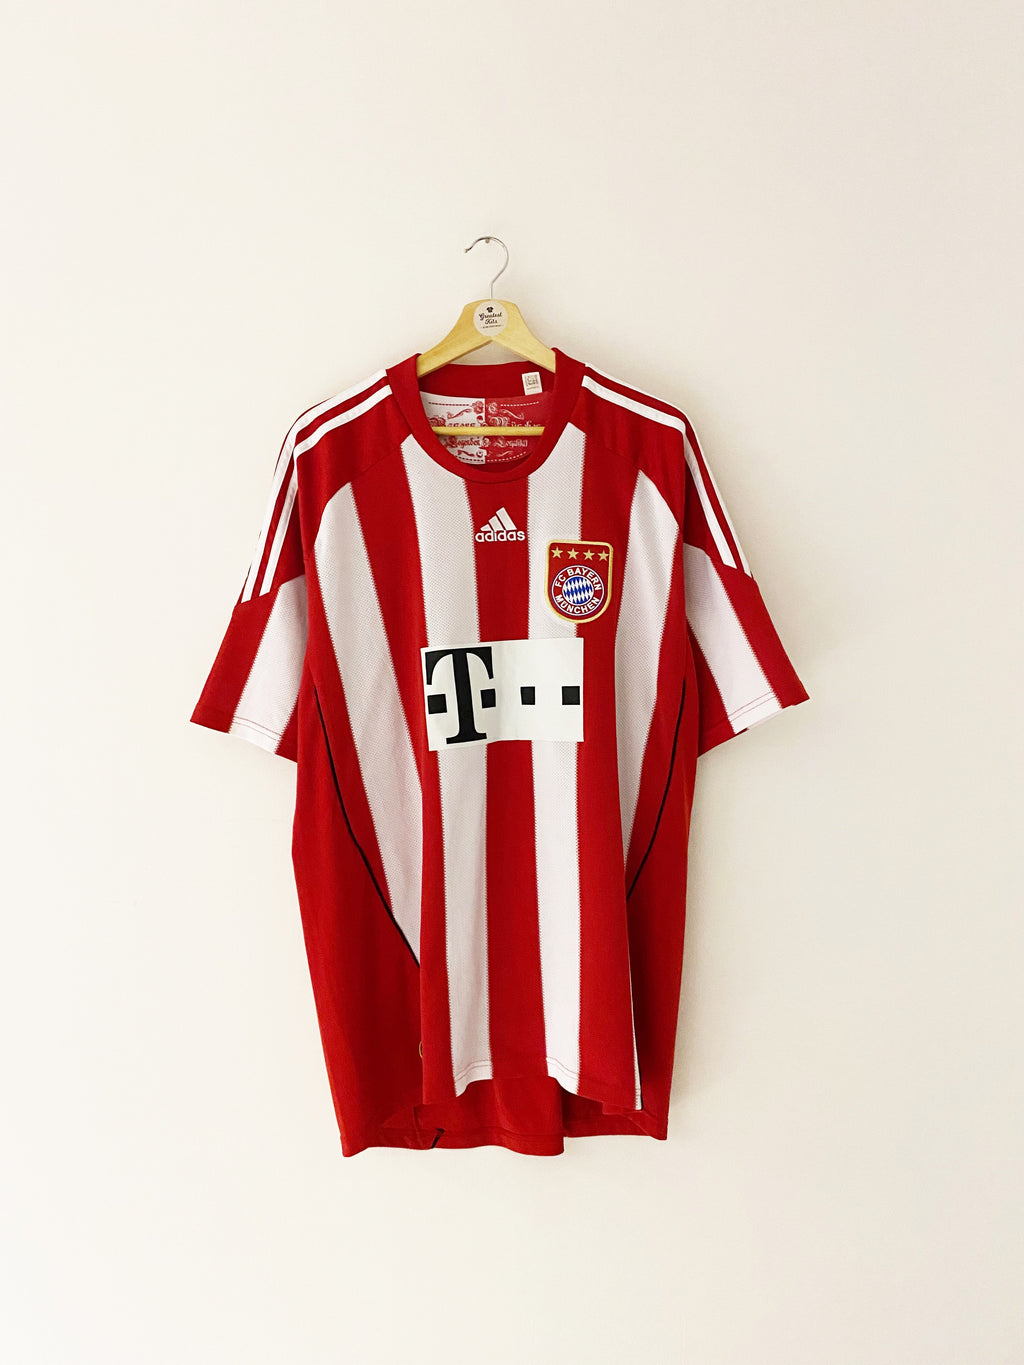 Camiseta local del Bayern de Múnich 2010/11 (XL) 8.5/10